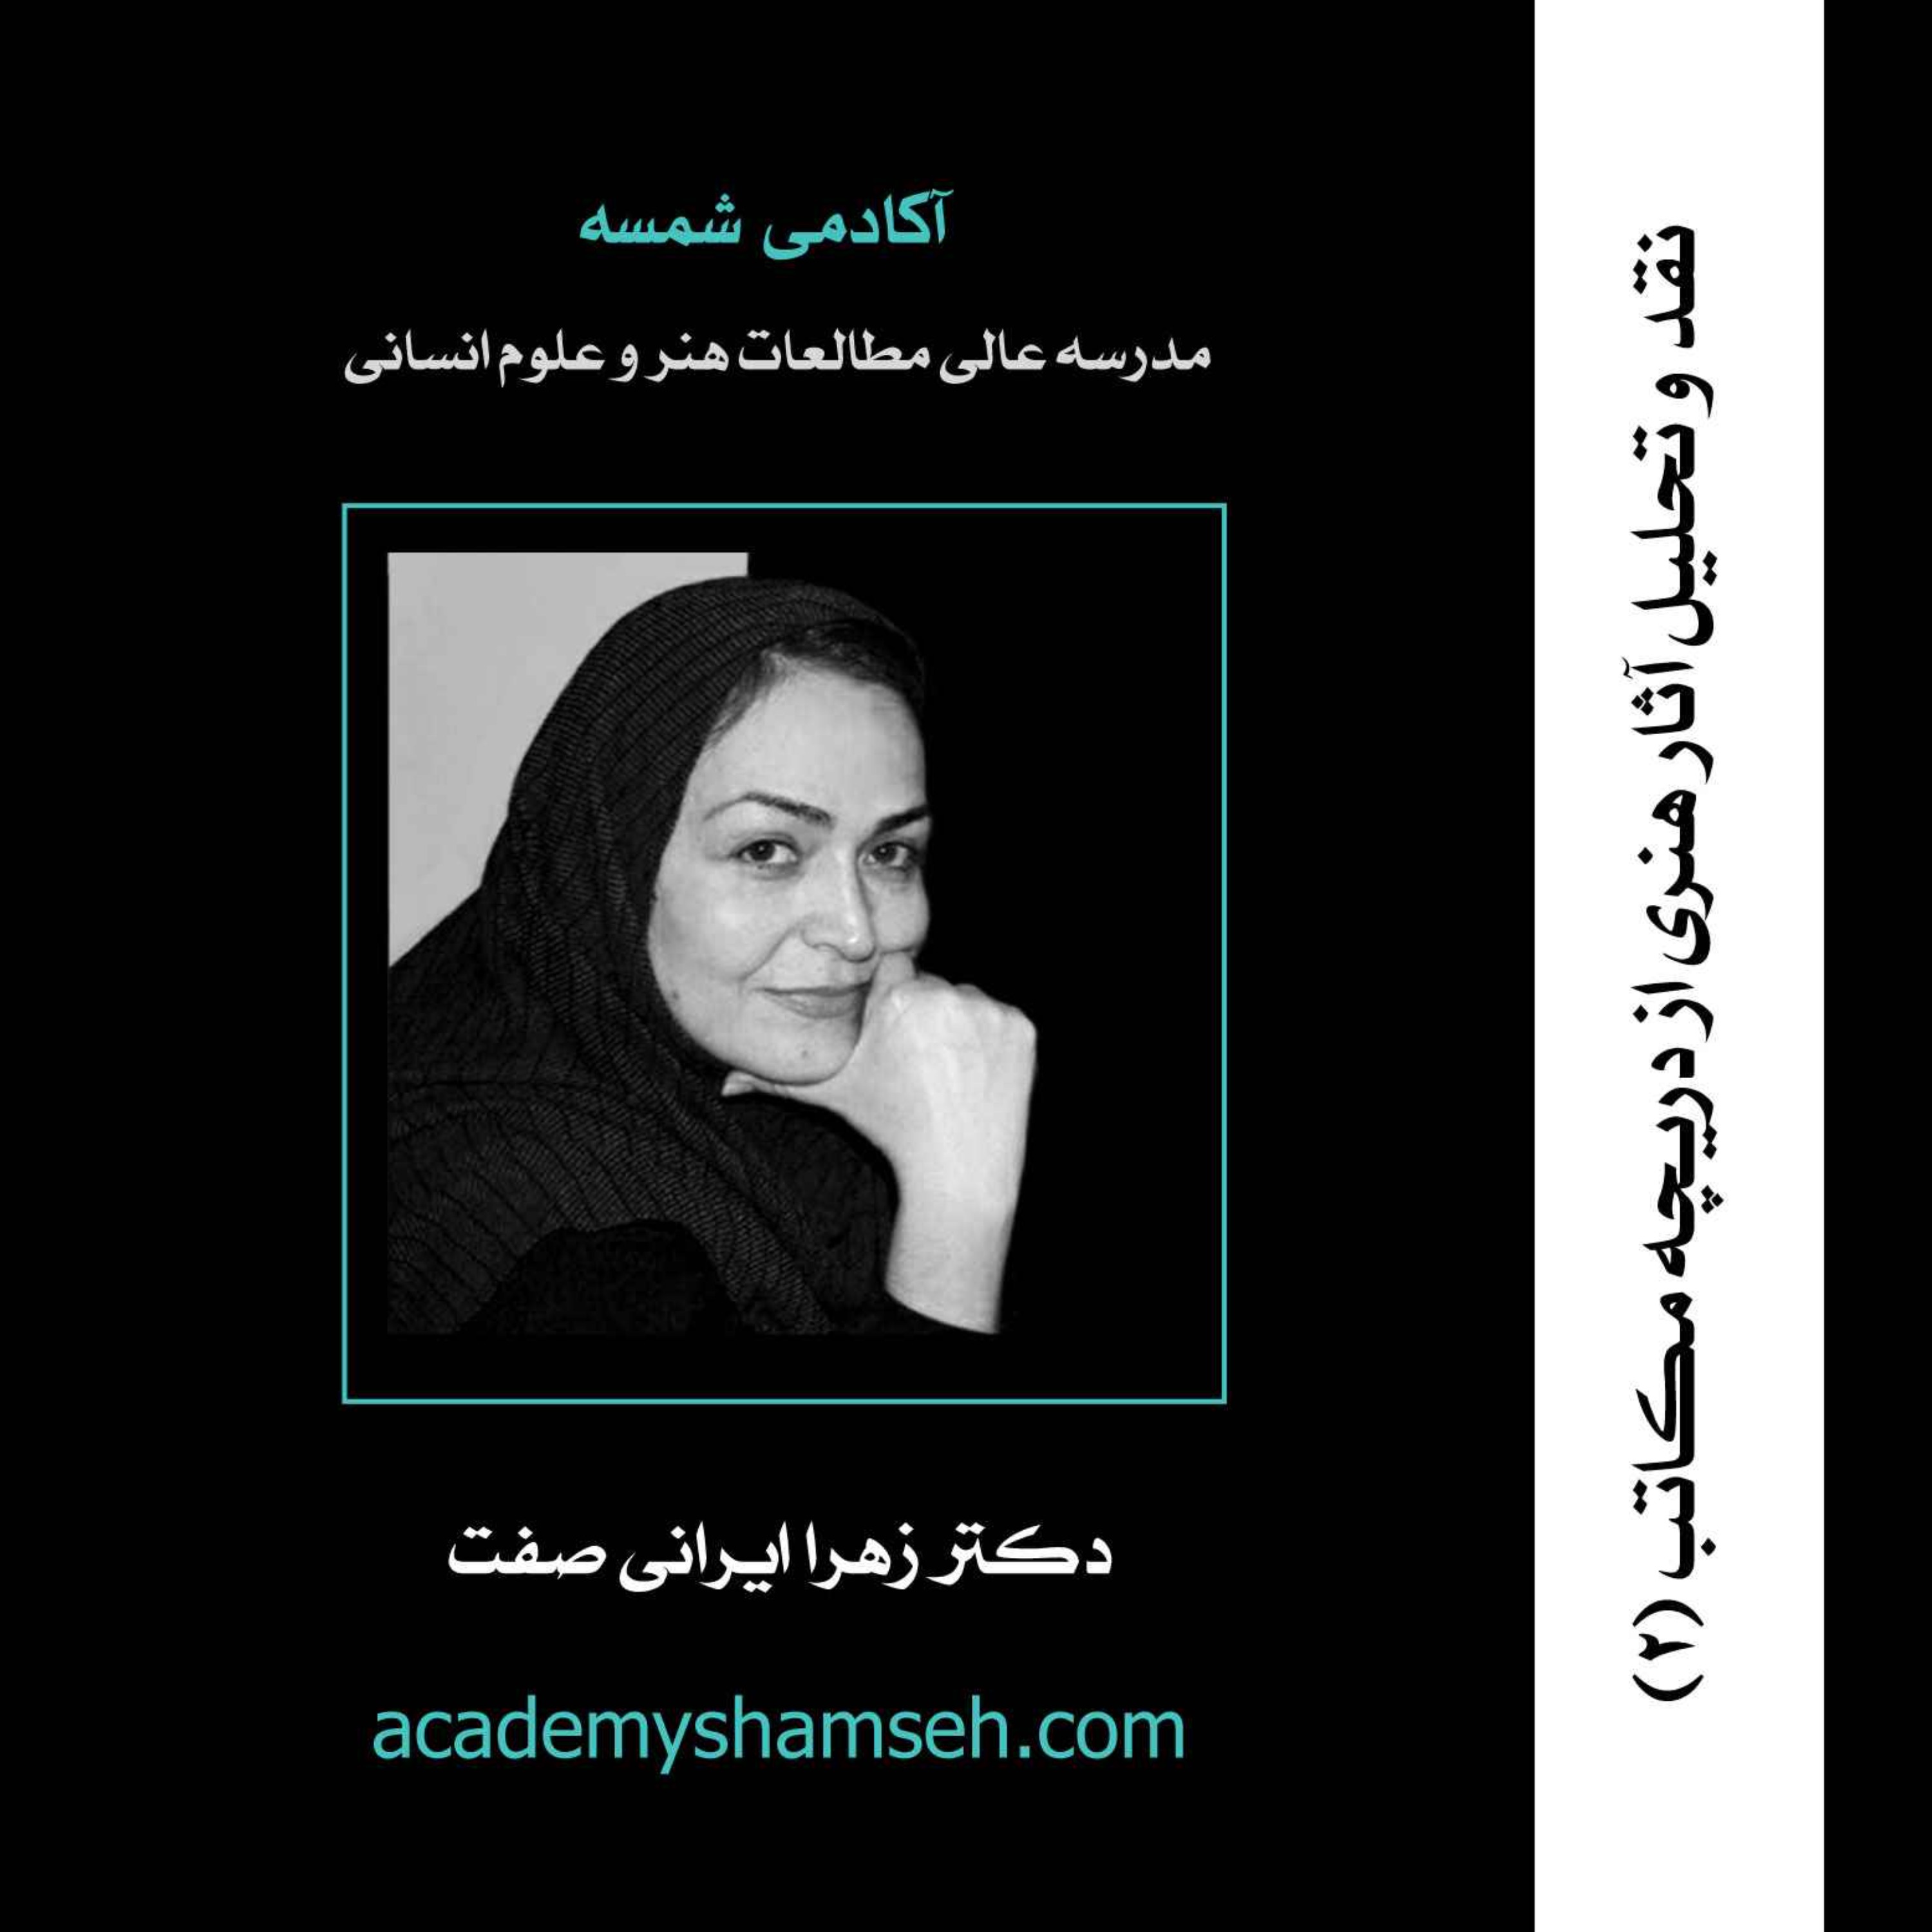 نقد و تحلیل آثار هنری از دریچه مکاتب (2) | دکتر زهرا ایرانی صفت